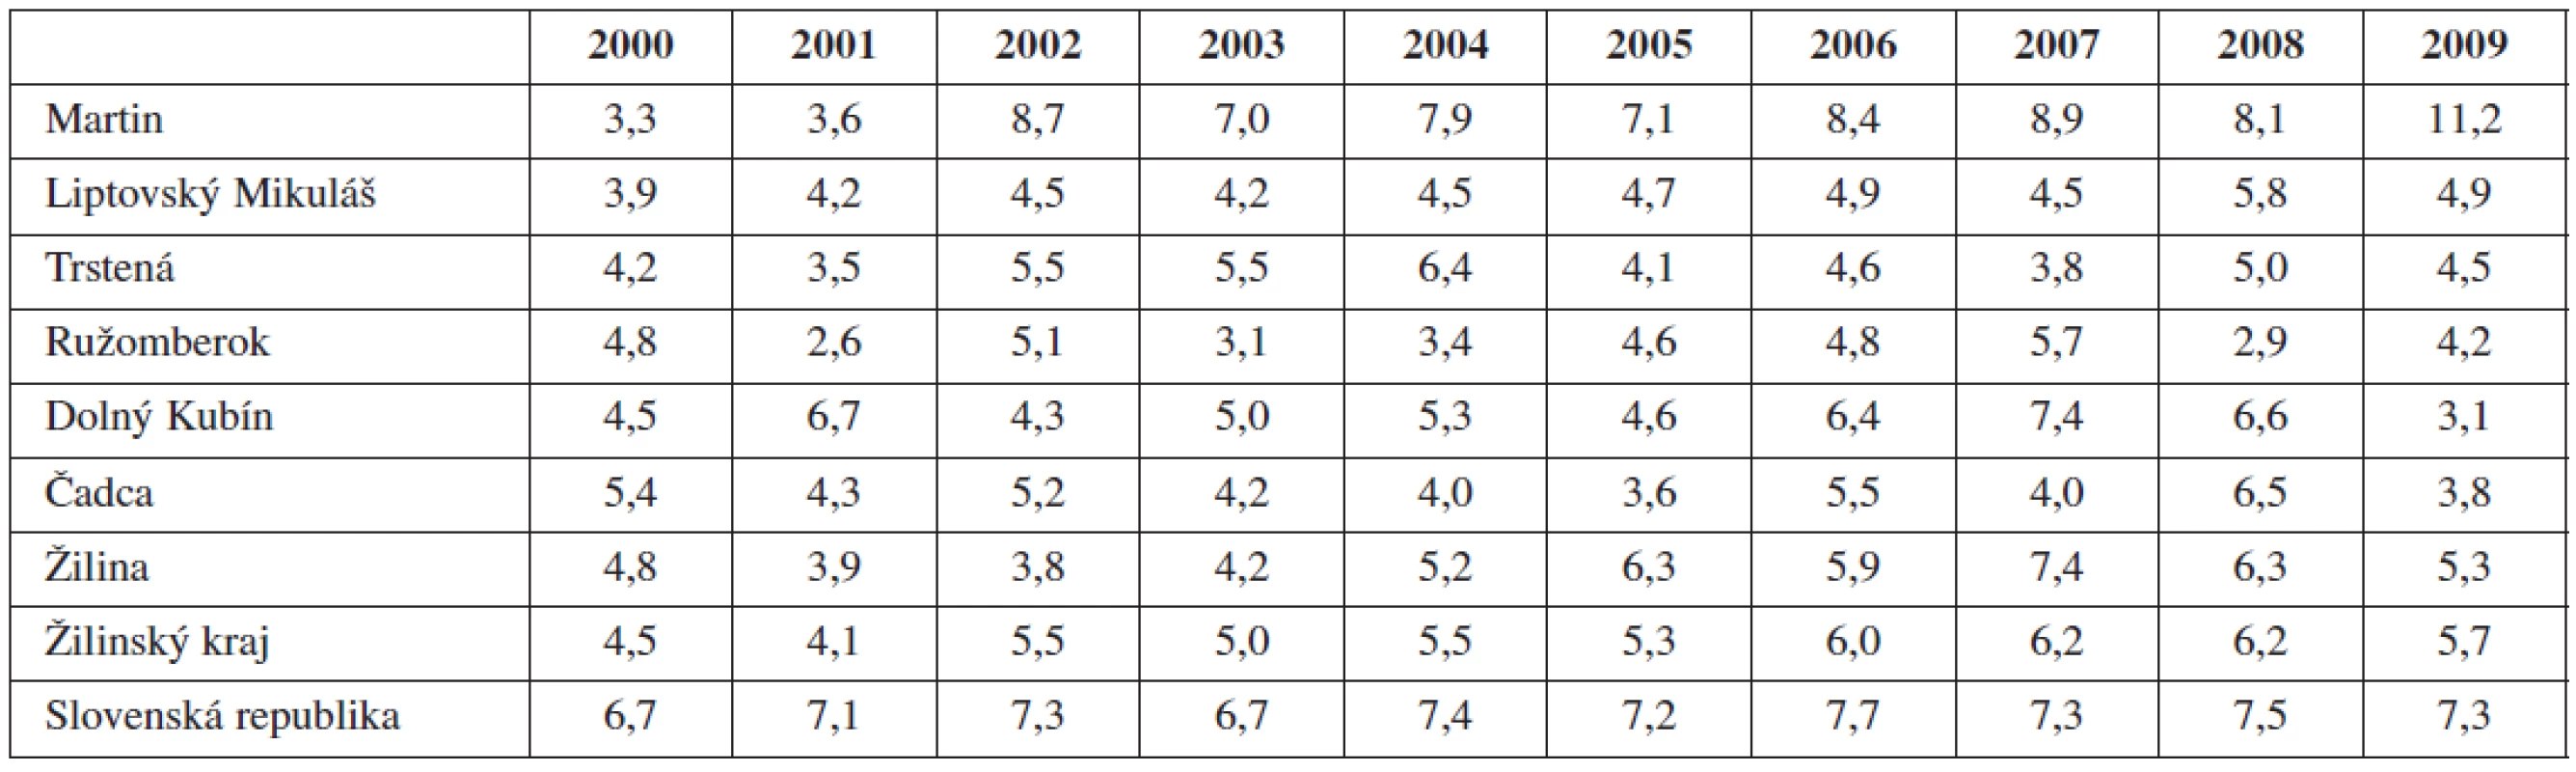 Výskyt predčasných pôrodov Žilinskom kraji vs. SR (2000-2009), hodnoty uvádzané v %